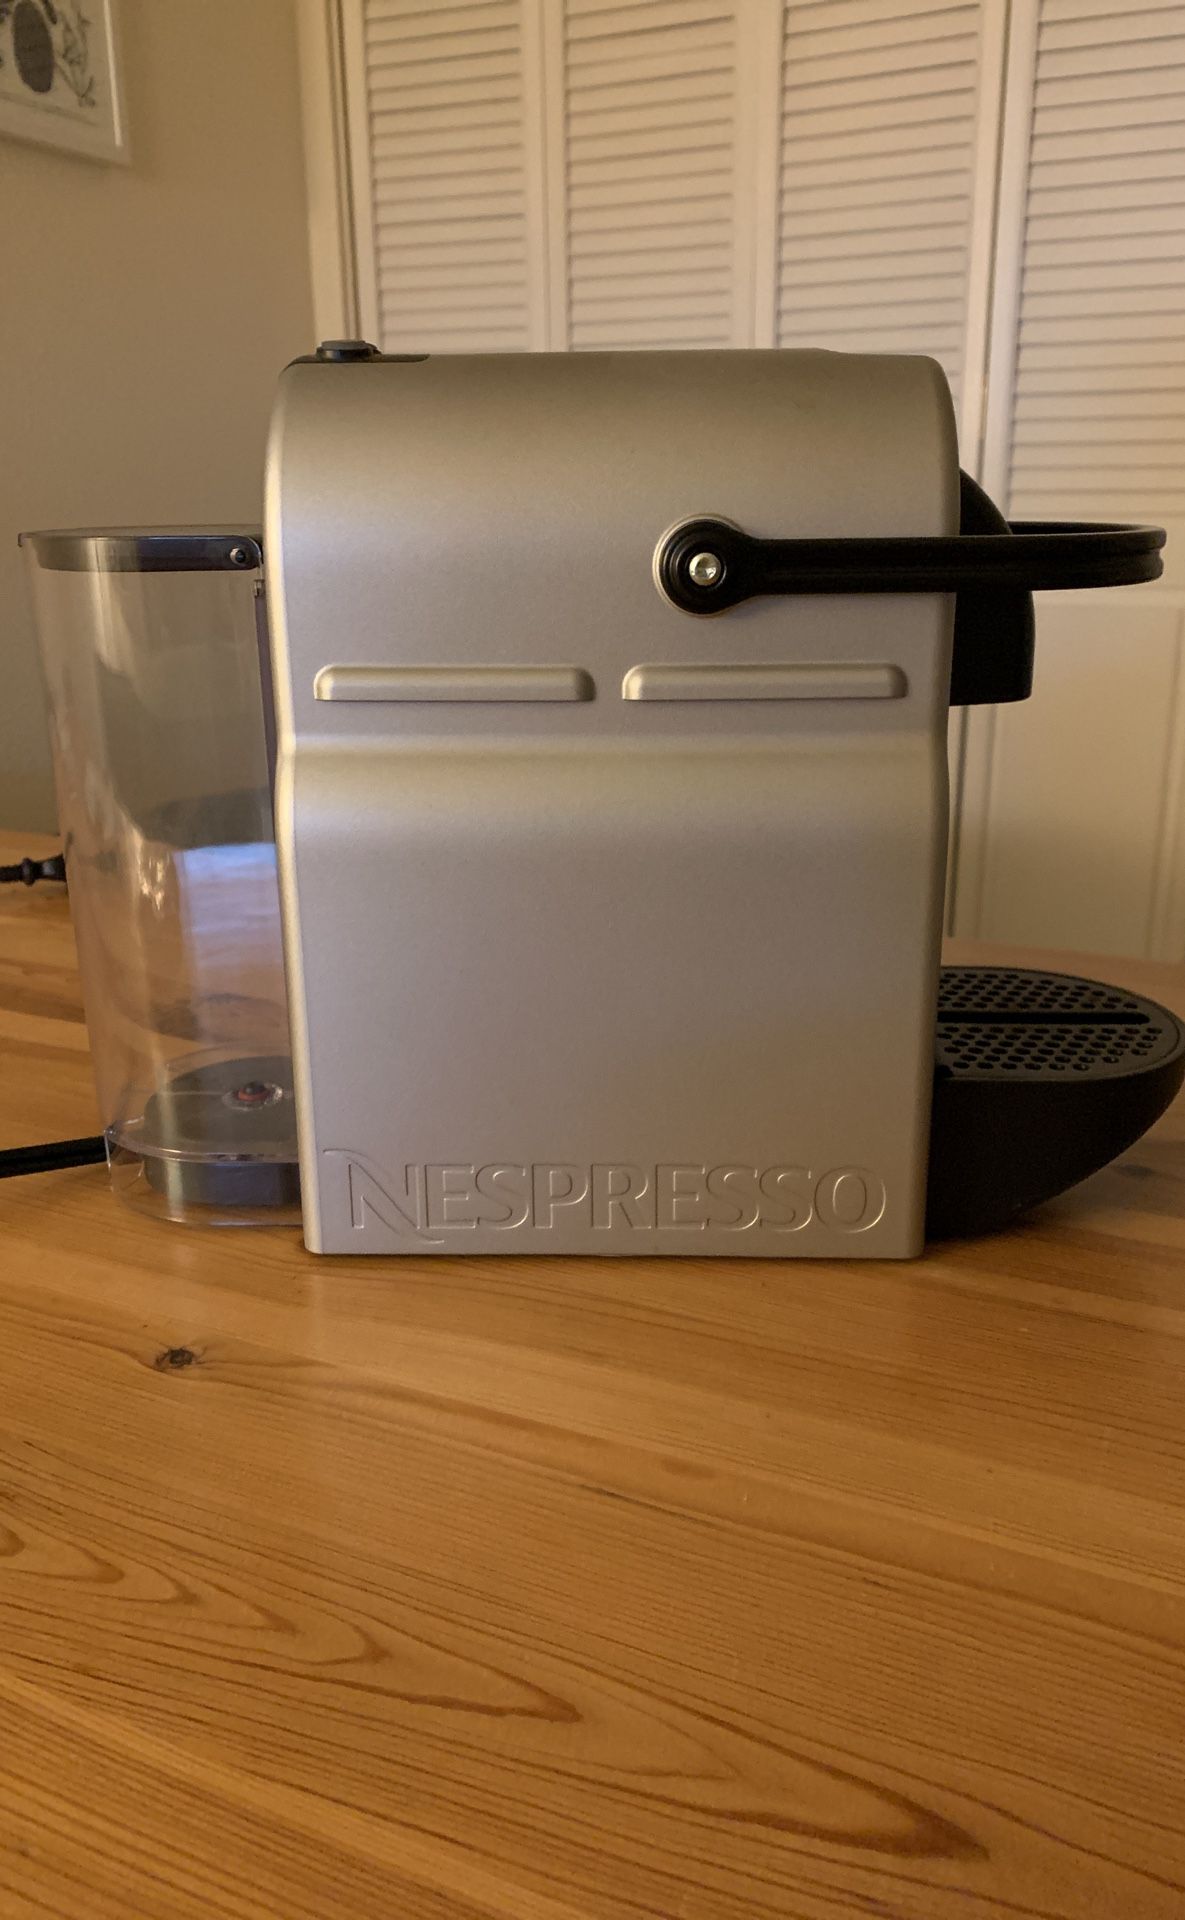 Nespresso Inissia Espresso Machine by De’Longhi -Silver